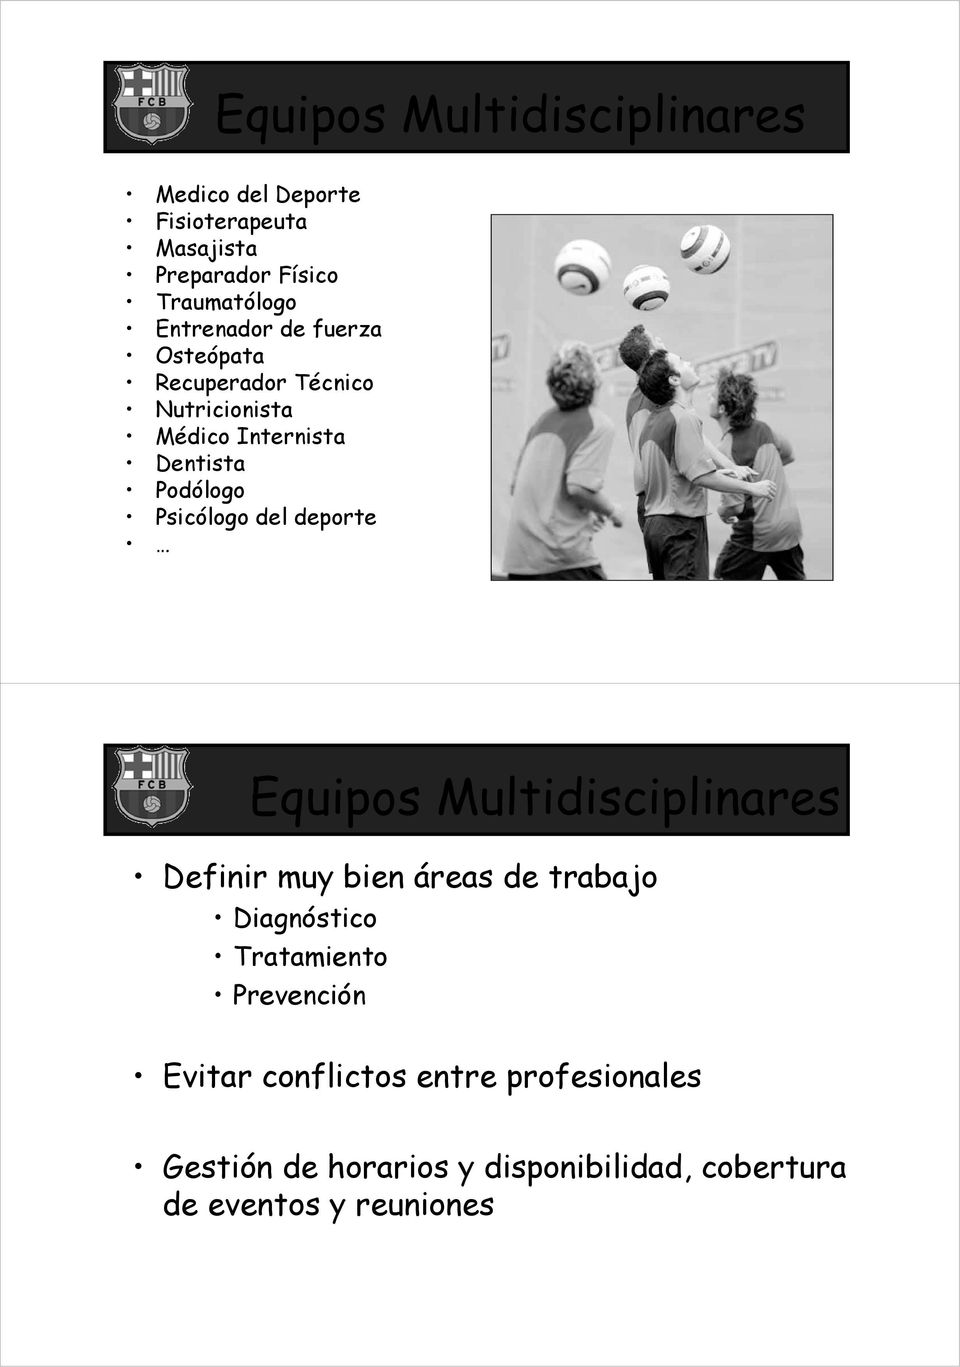 Psicólogo del deporte Equipos Multidisciplinares Definir muy bien áreas de trabajo Tratamiento